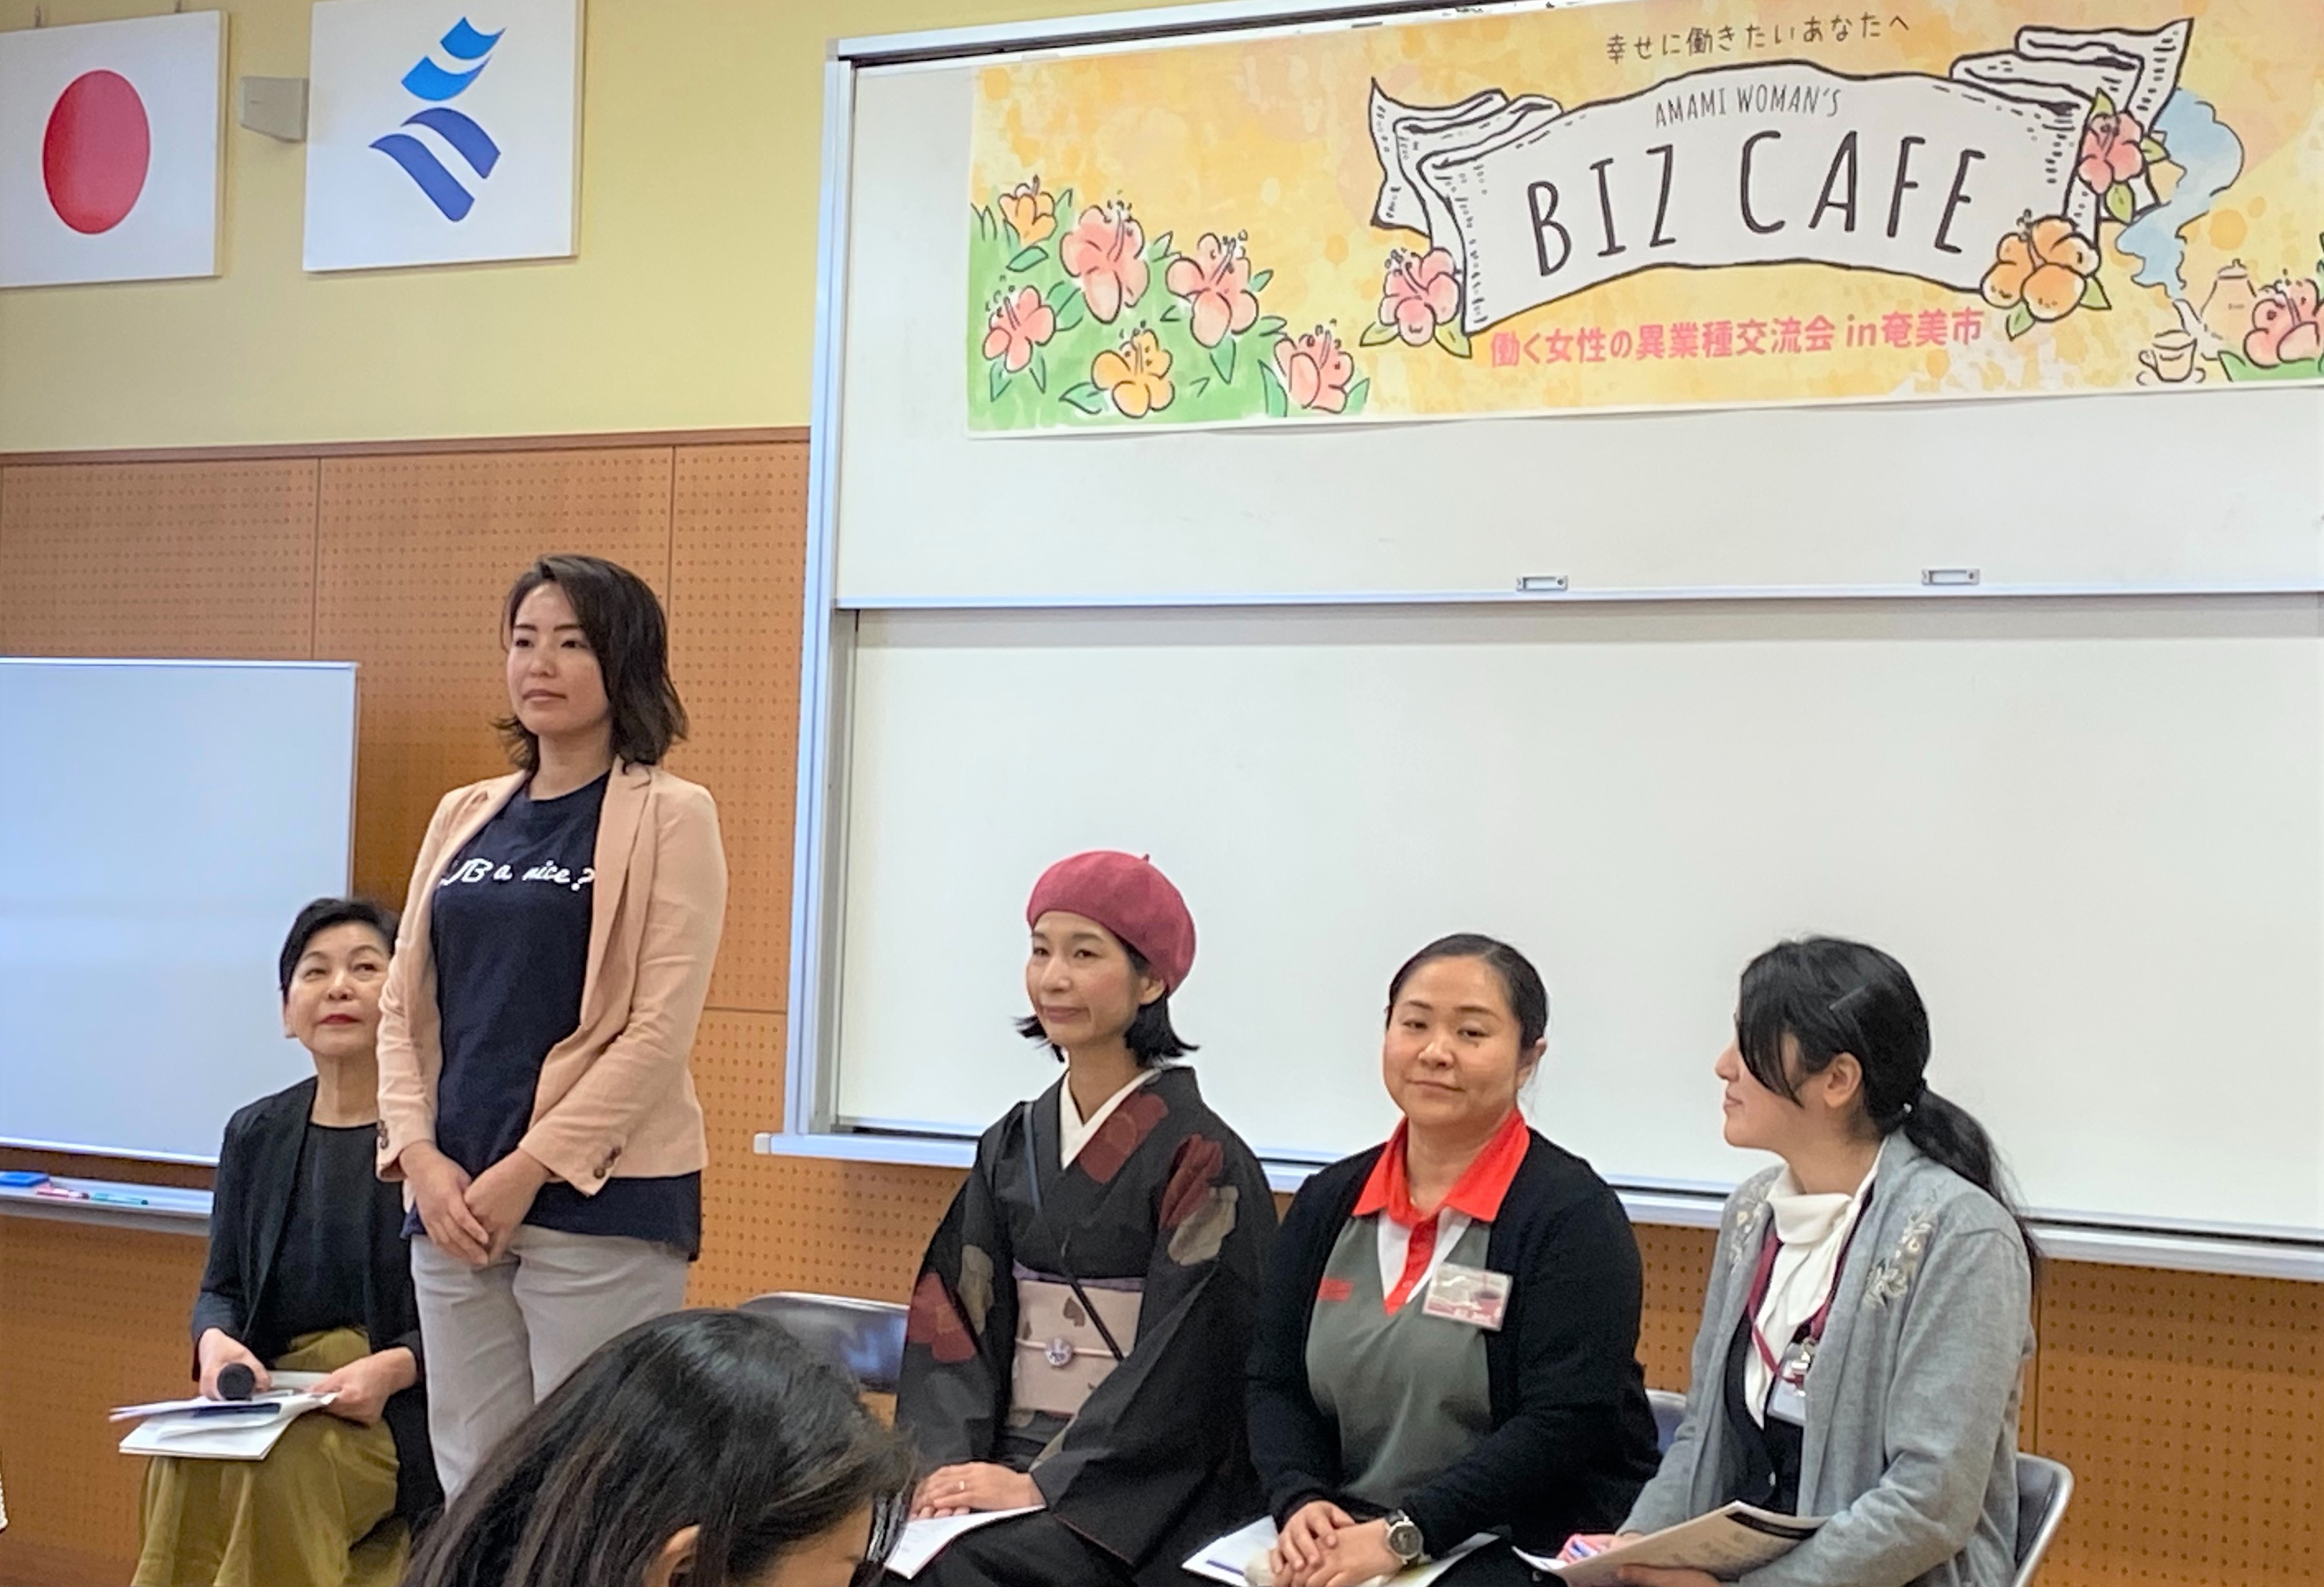 【報告レポ】『Amami womans BIZ CAFE』が大盛況で終了しました！！